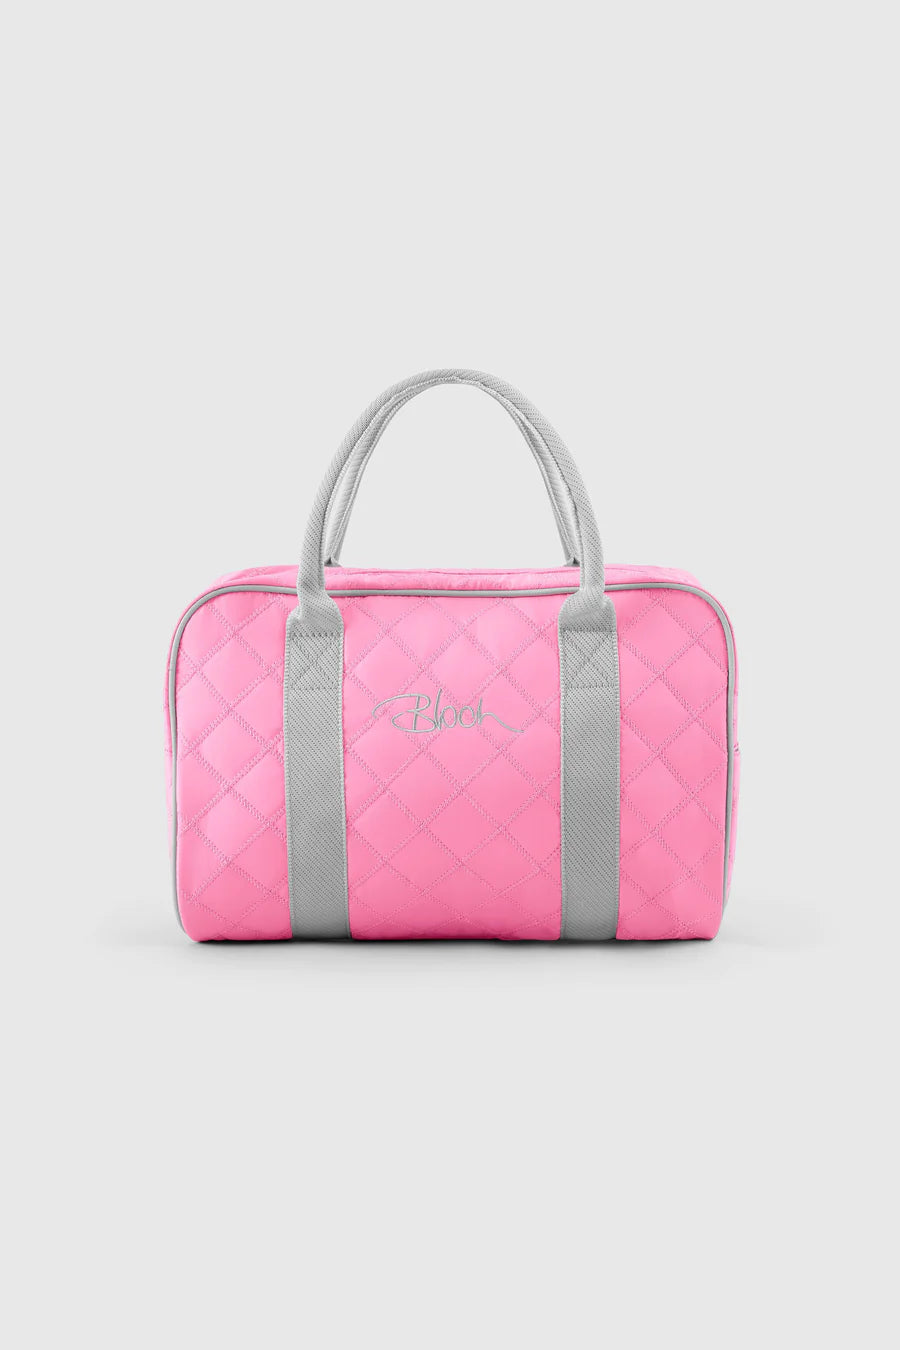 Bloch Encore Quilt Bag Pink